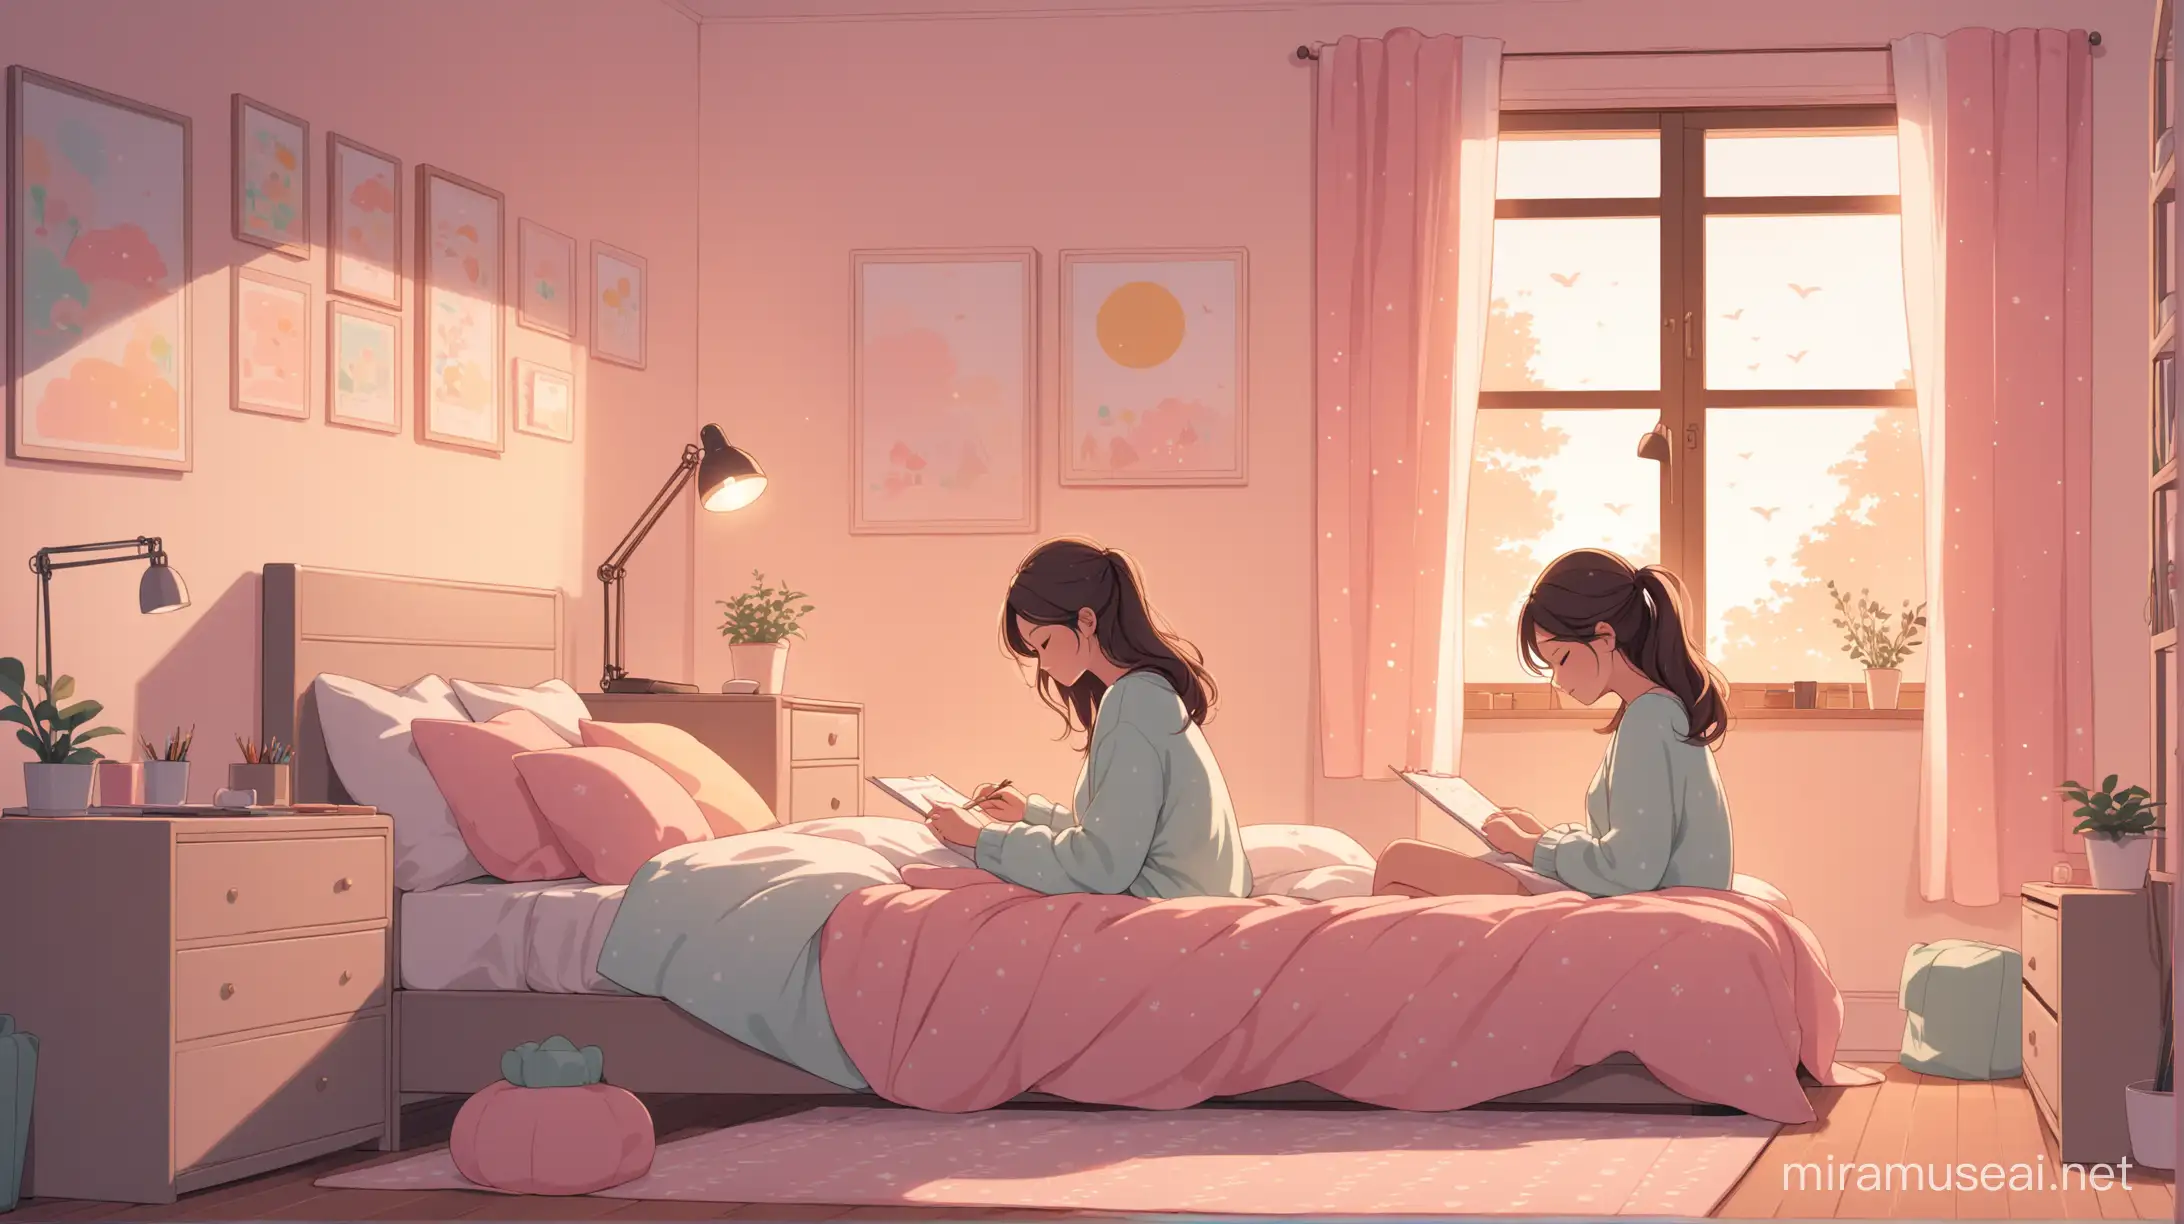 Cozy Bedroom Girl Drawing Serene Pastel Atmosphere